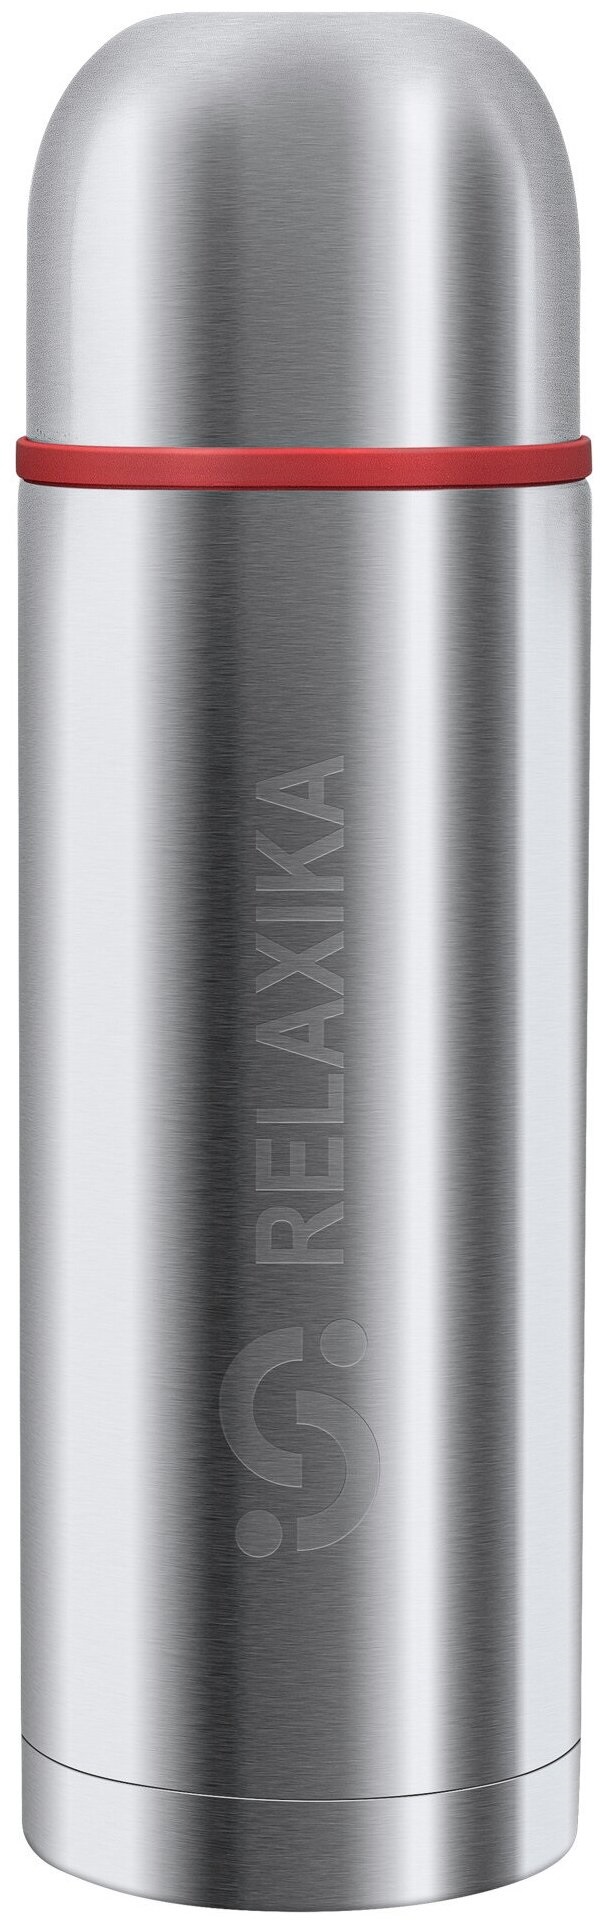 Термос Relaxika 102 1,2 литра, 2 чашки, стальной